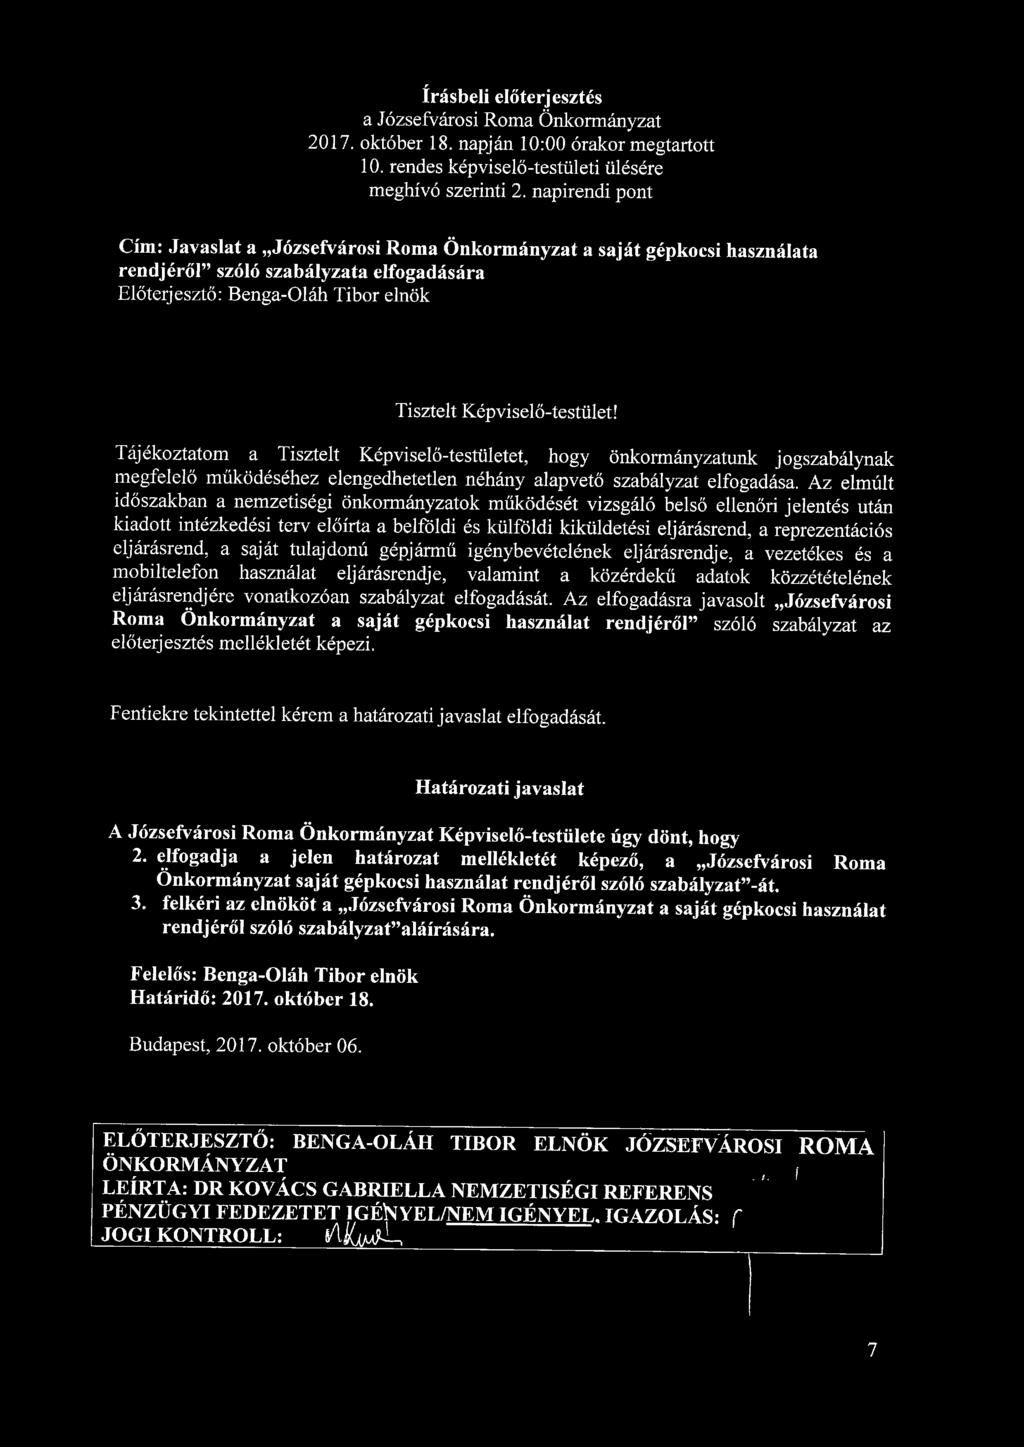 írásbeli előterjesztés a Józsefvárosi Roma Önkormányzat 2017. október 18. napján 10:00 órakor megtartott 10. rendes képviselő-testületi ülésére meghívó szerinti 2.